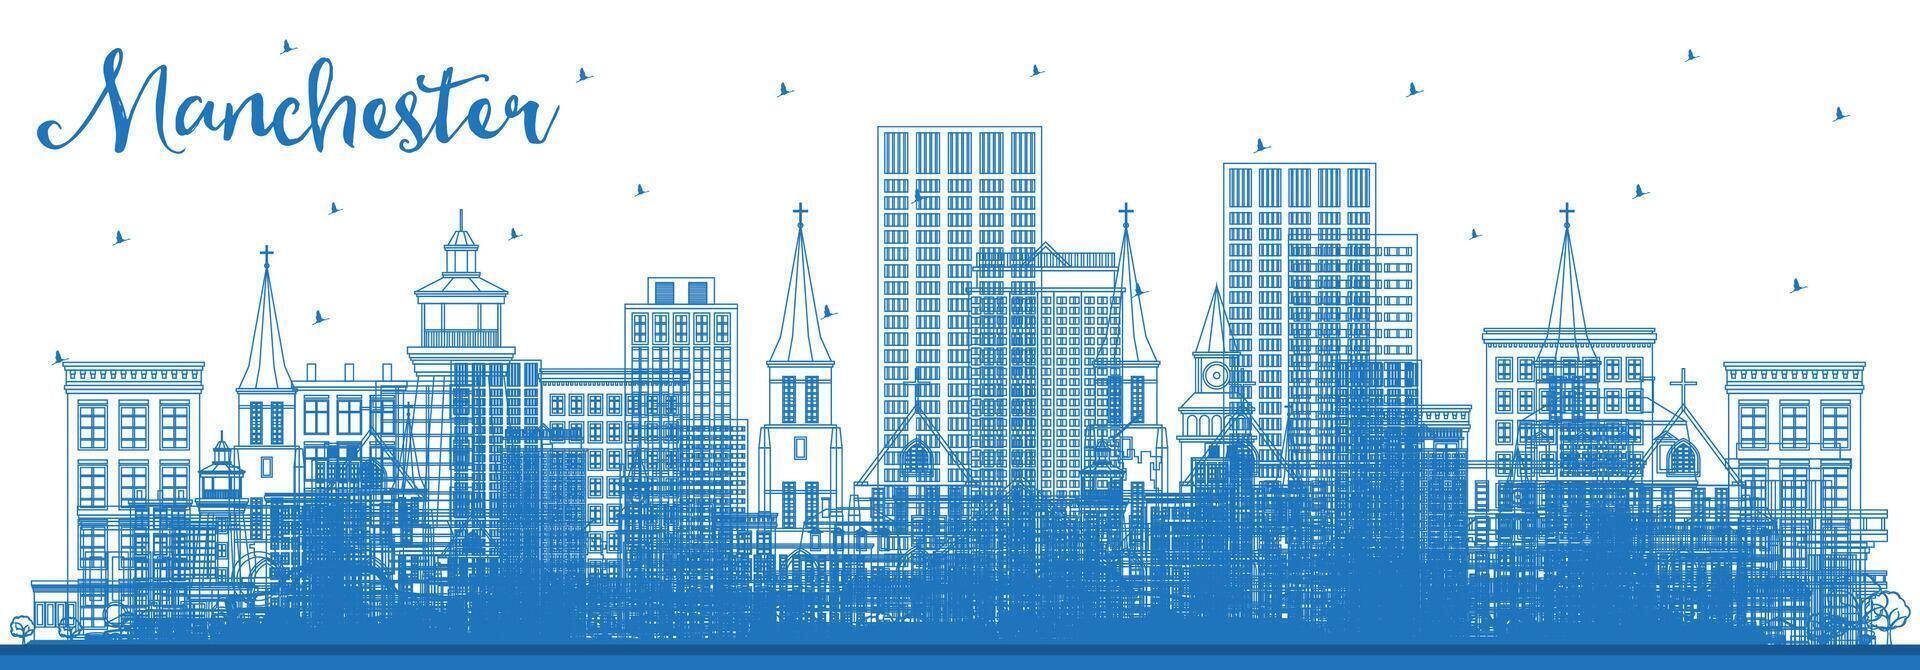 schets Manchester nieuw hampshire stad horizon met blauw gebouwen. bedrijf reizen en toerisme concept met historisch en modern architectuur. Manchester Verenigde Staten van Amerika stadsgezicht met oriëntatiepunten. vector